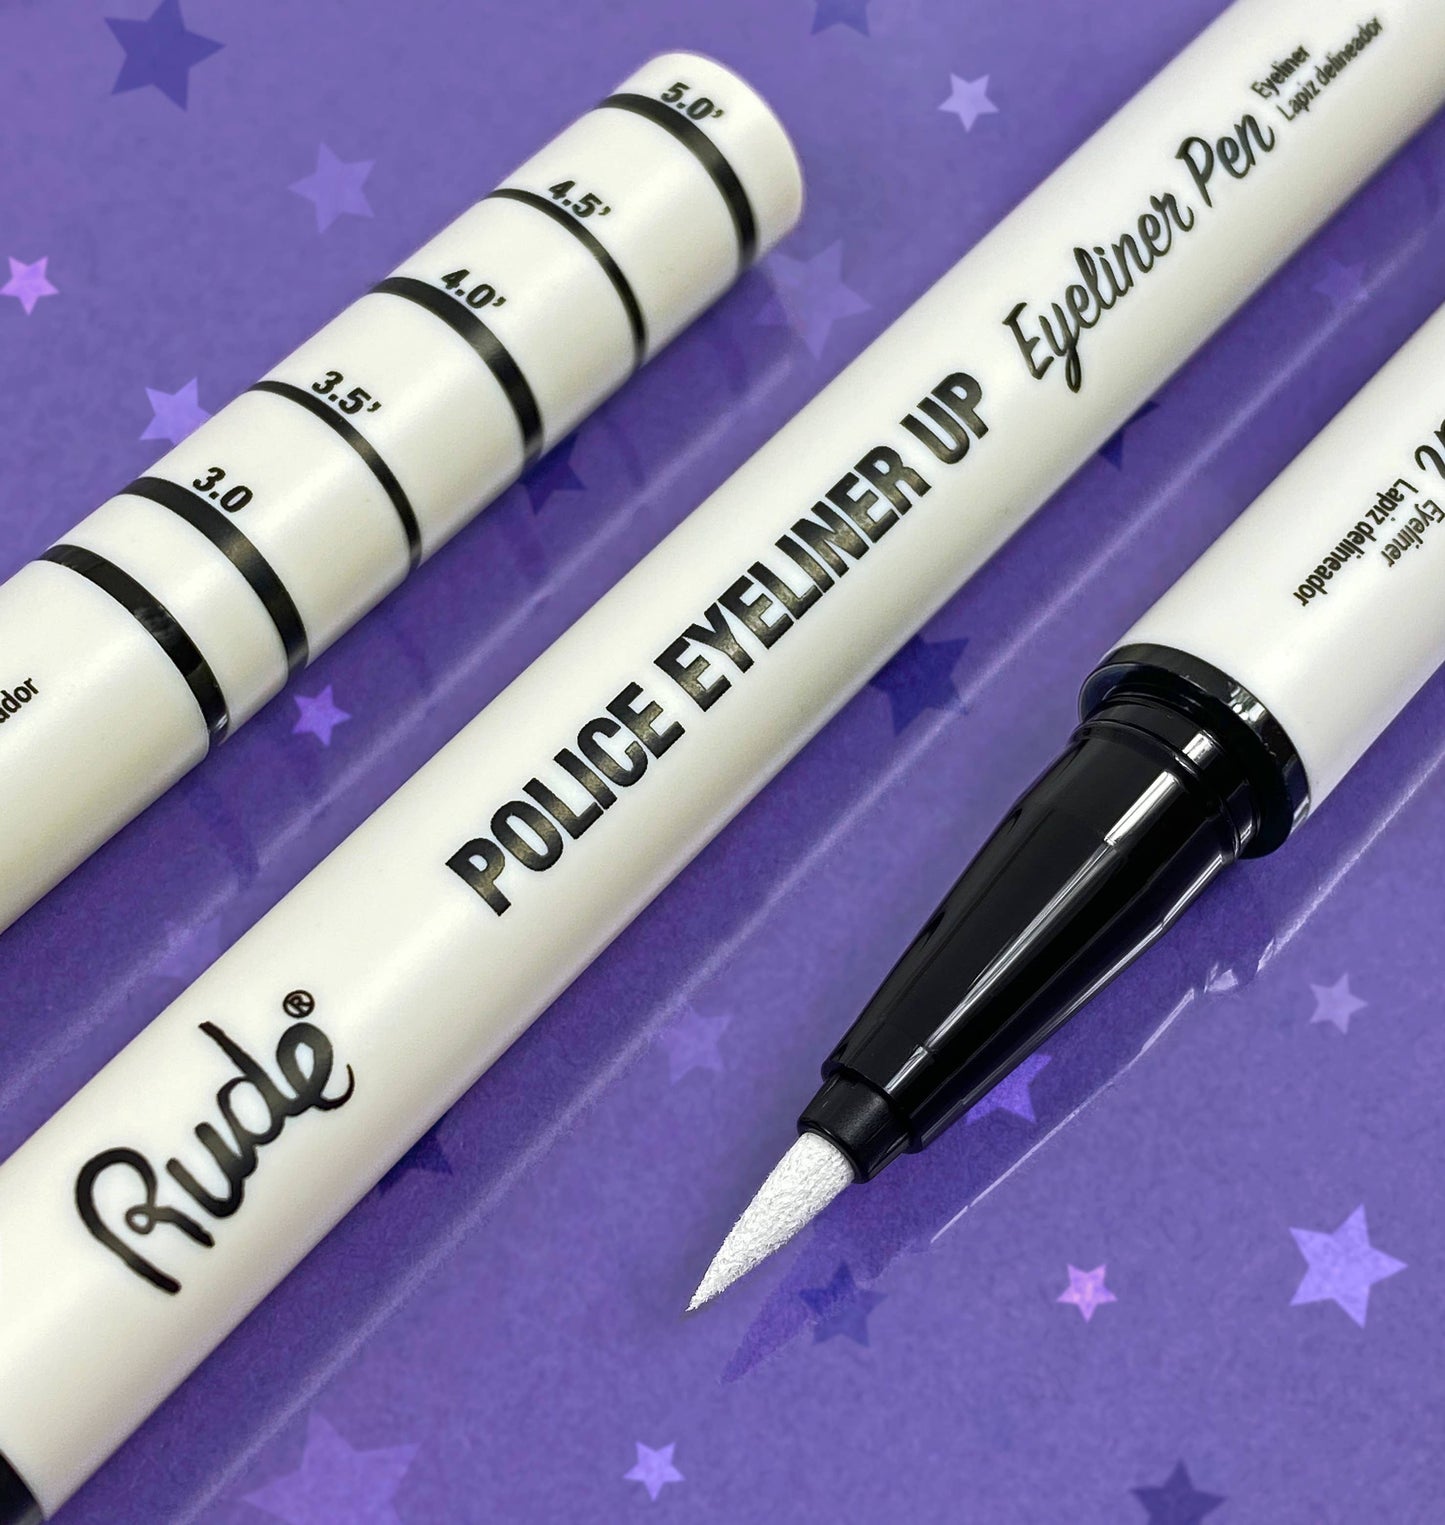 Police Eyeliner Up Eyeliner Pen: Top Dog (White)